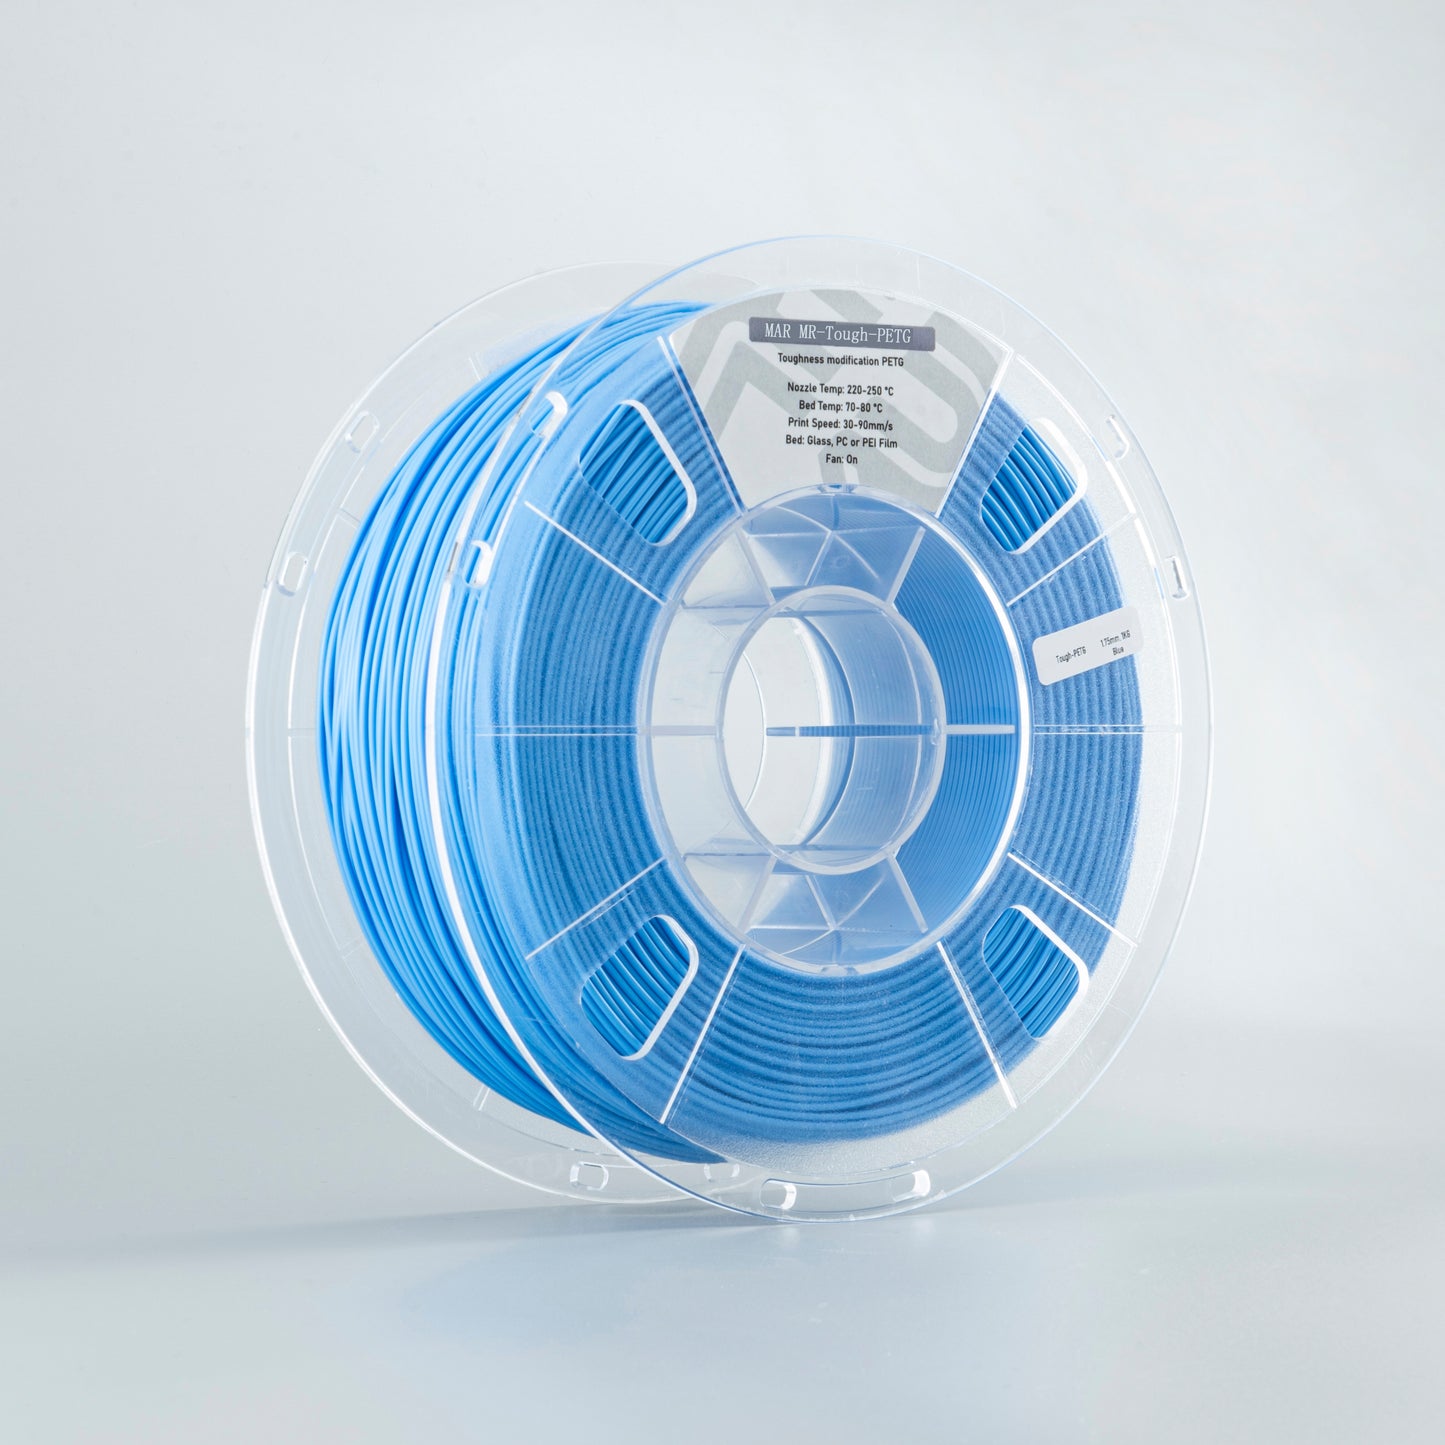 3D Printer Filament PETG 1.75mm Plastic Filament Consumables PETG Material for 3D Printer Blue Color Printing Materials